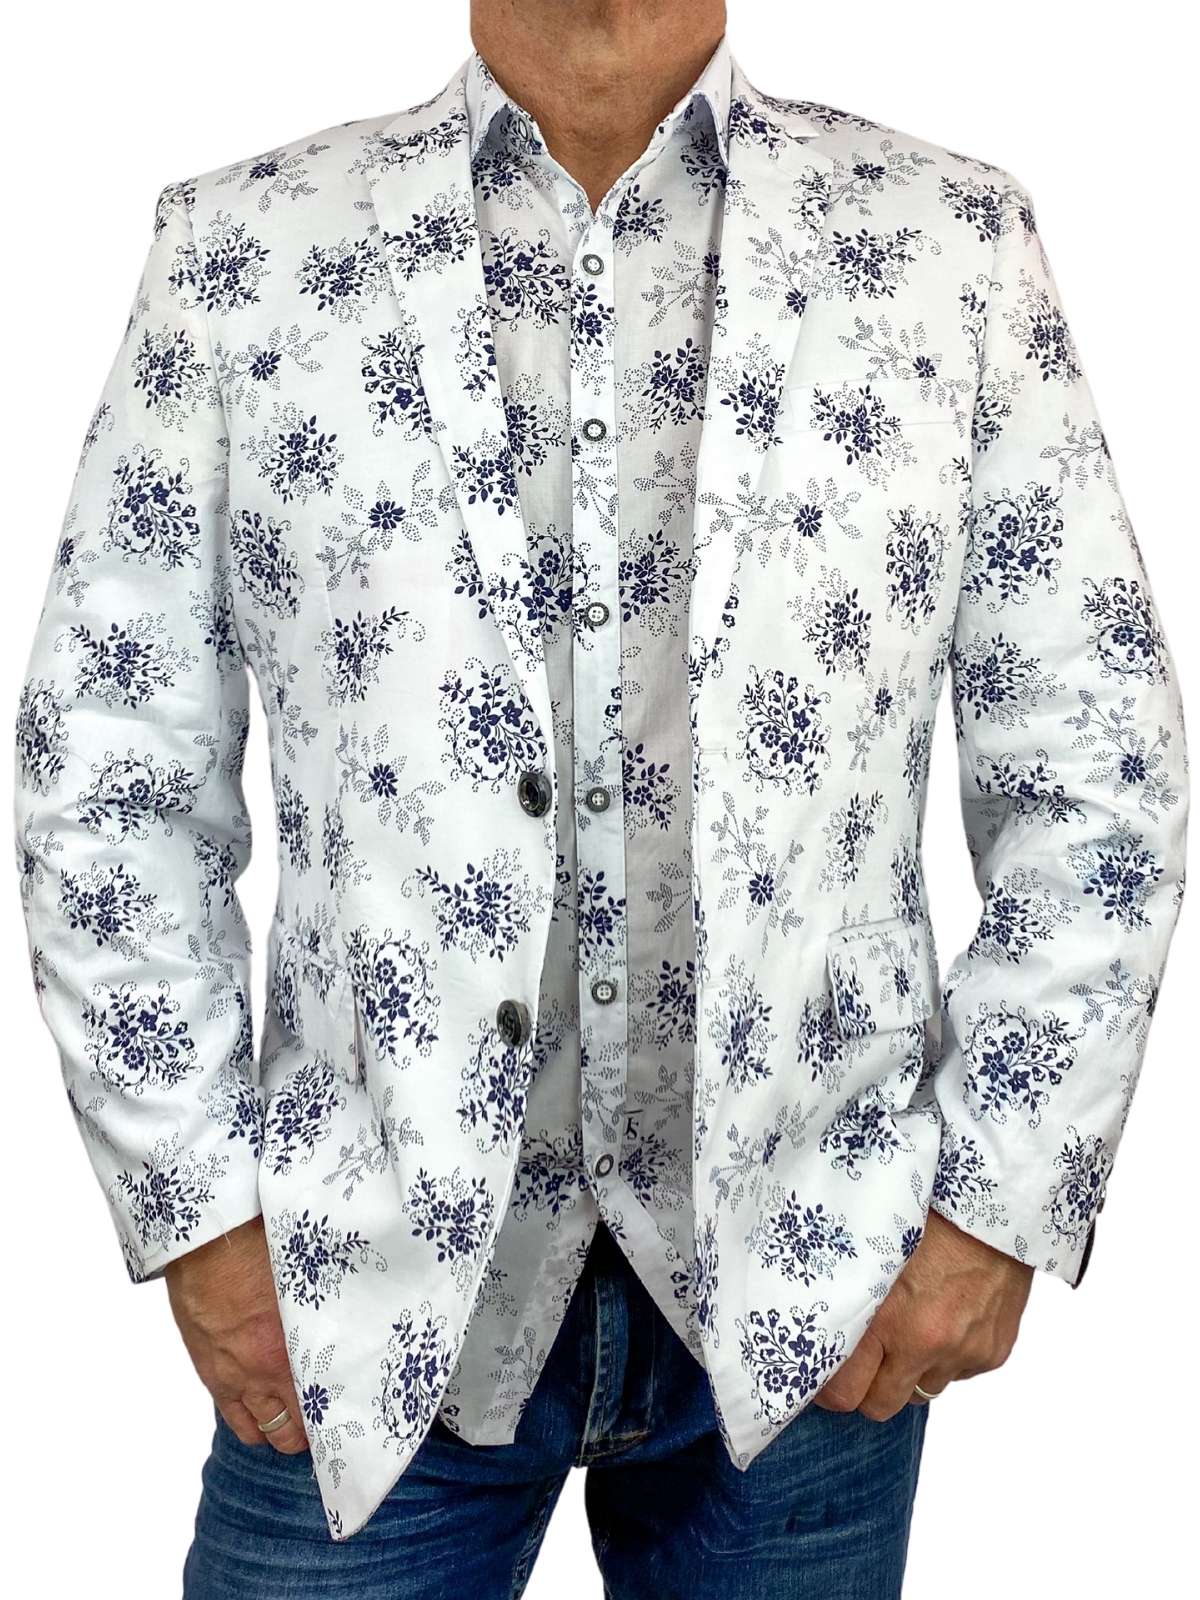 Freeze Floral Cotton L/S Shirt - White/Navy